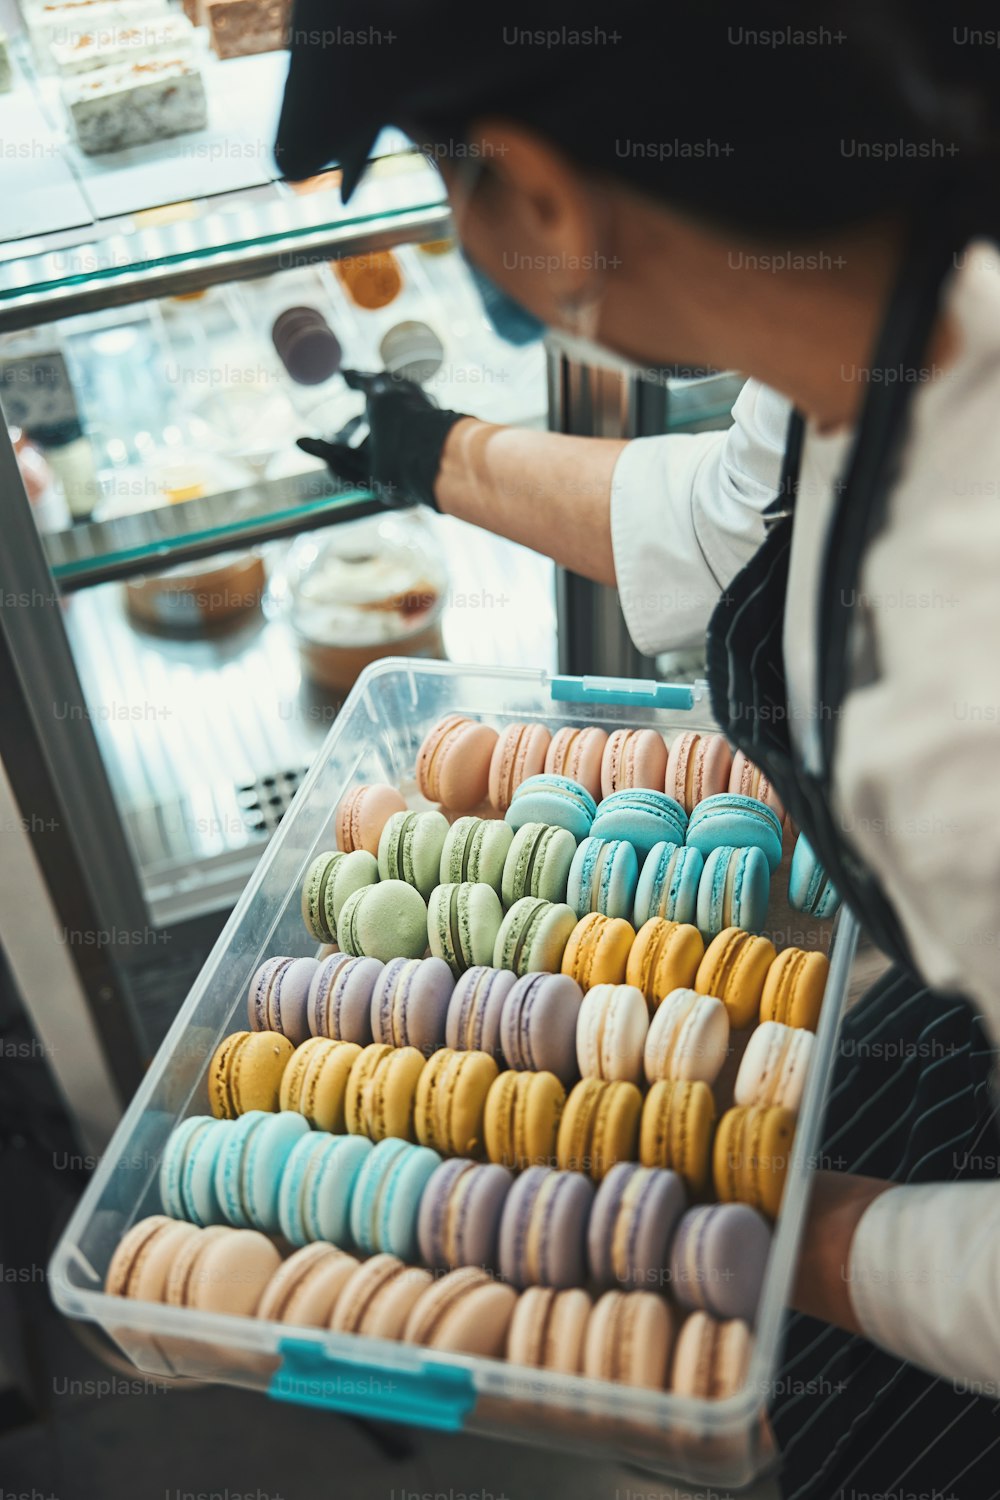 Beschnittenes Foto eines Café-Mitarbeiters in einer Maskenschachtel mit Macarons, während einige zum Schaufenster hinzugefügt werden